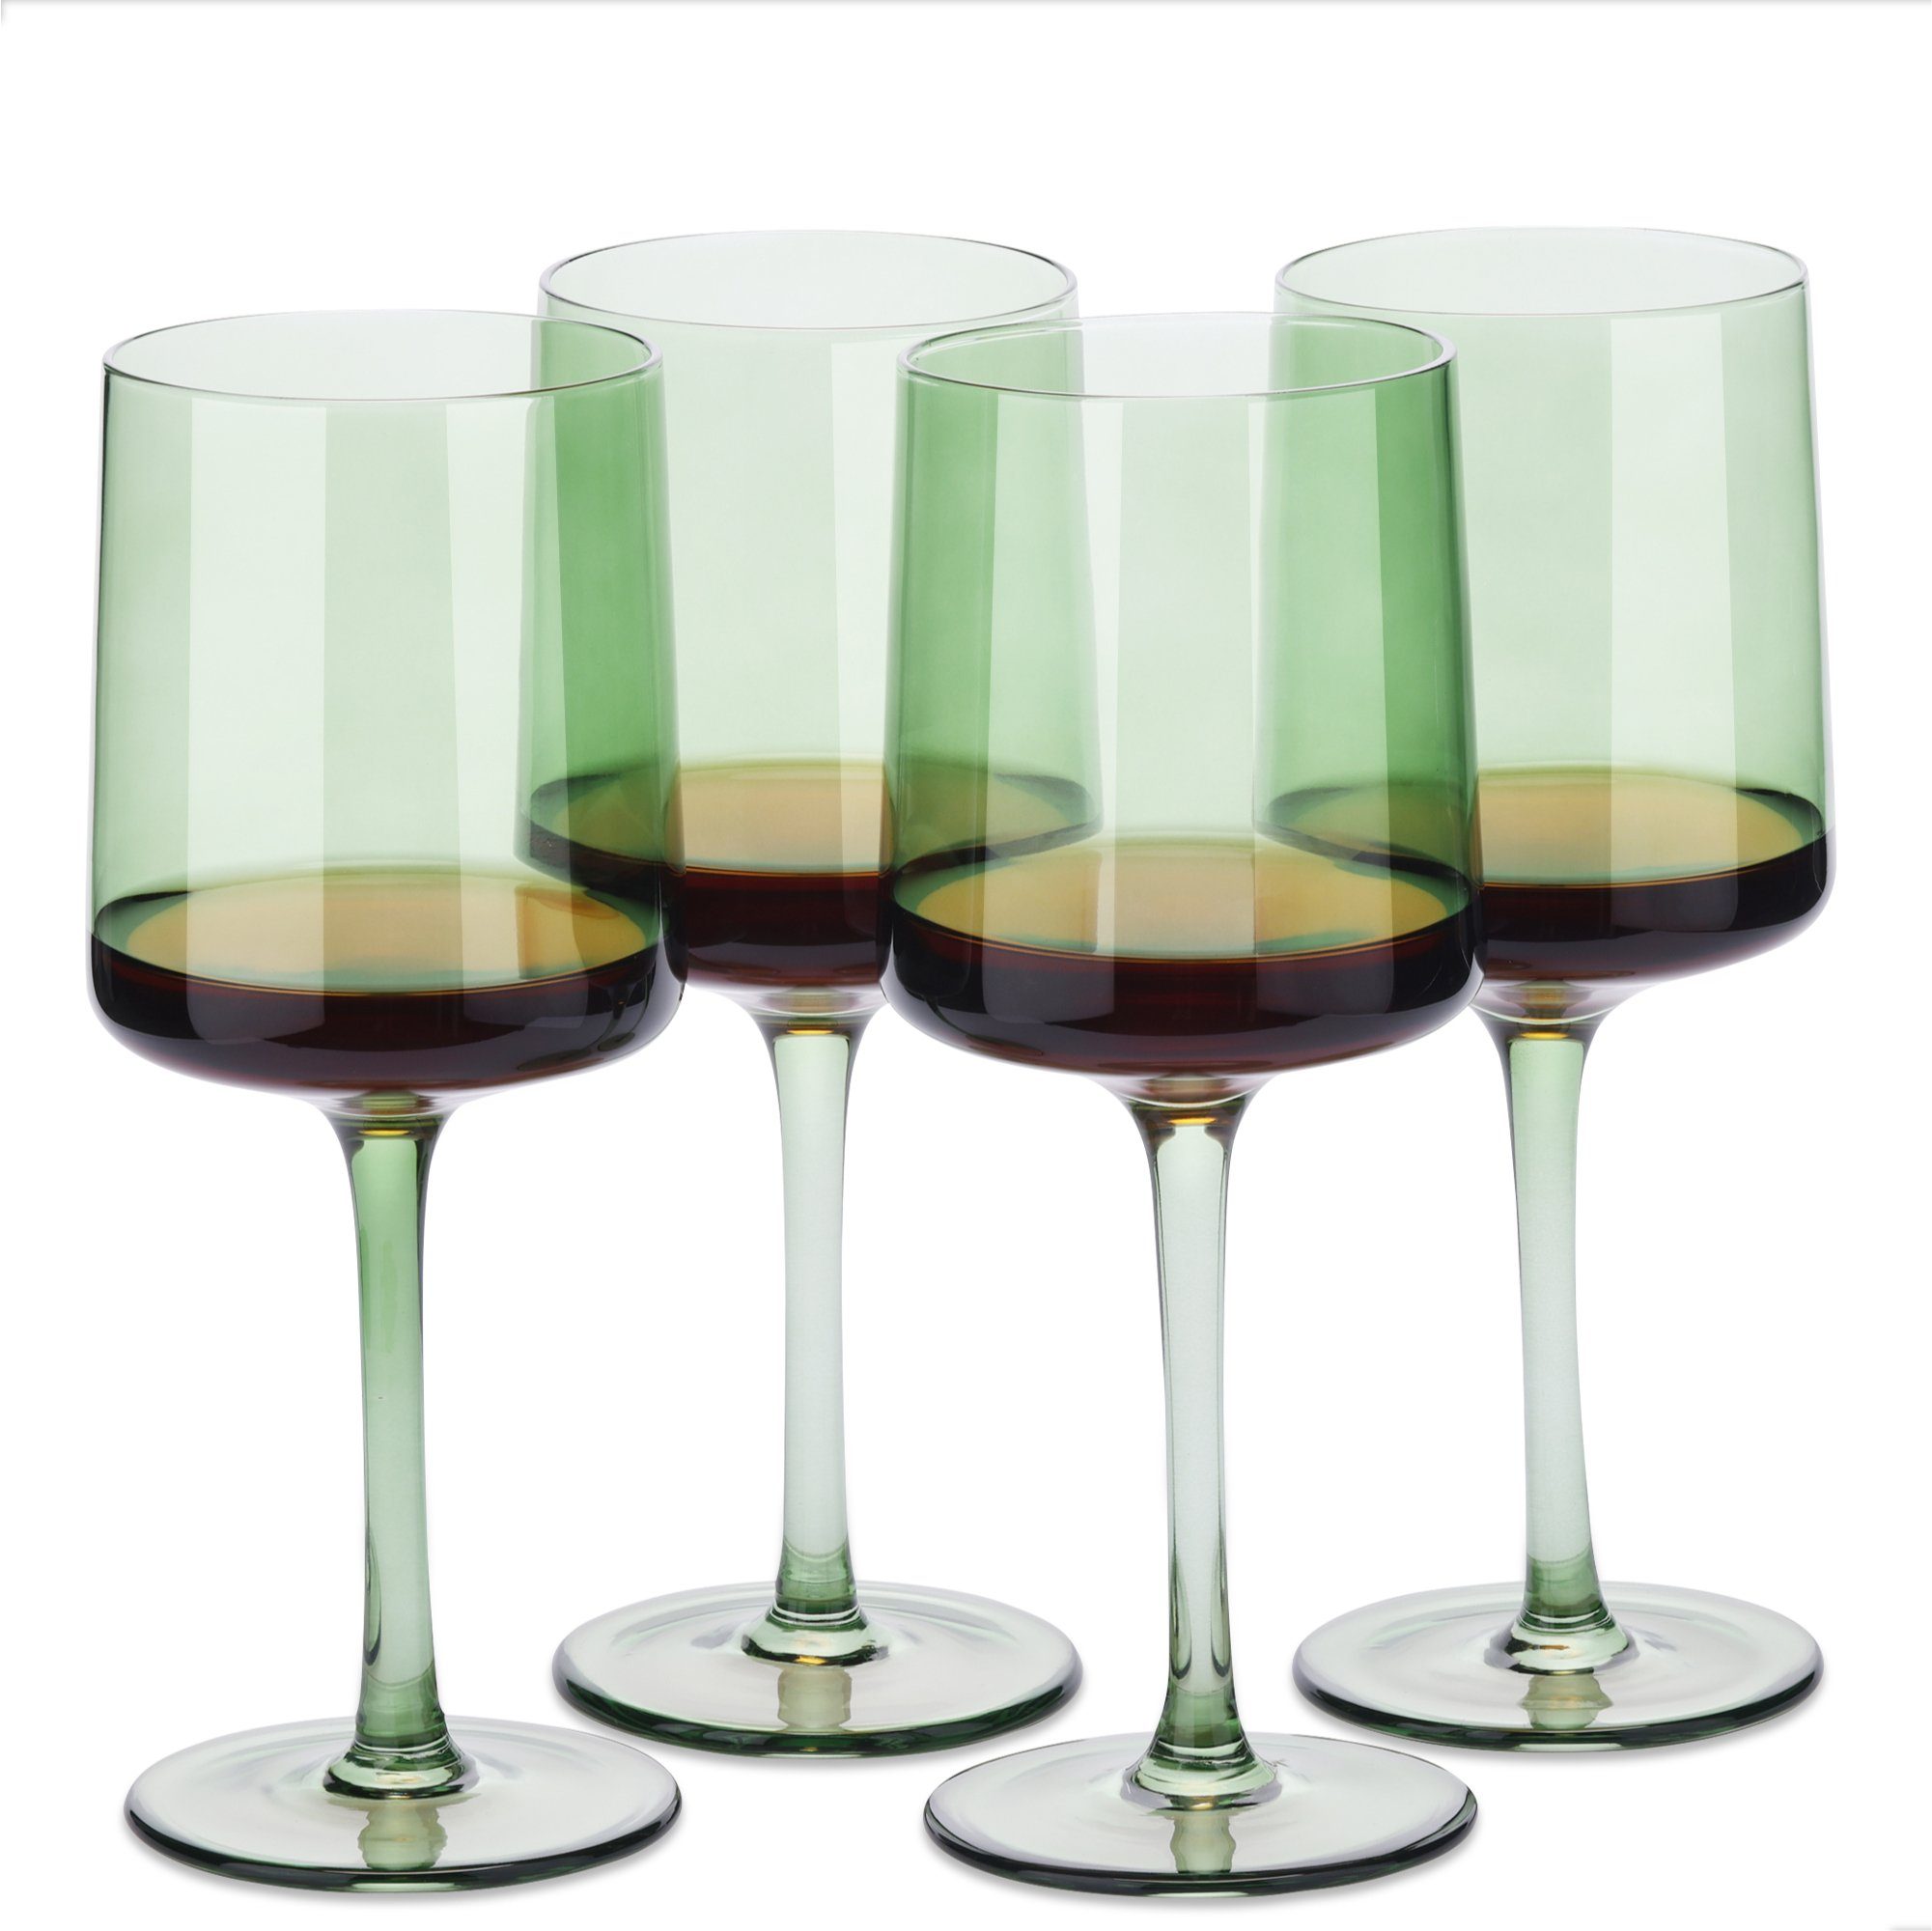 Navaris Weinglas mintgrün getönte Weingläser 4er-Set - Farbige Weingläser mit Stiel, Glas